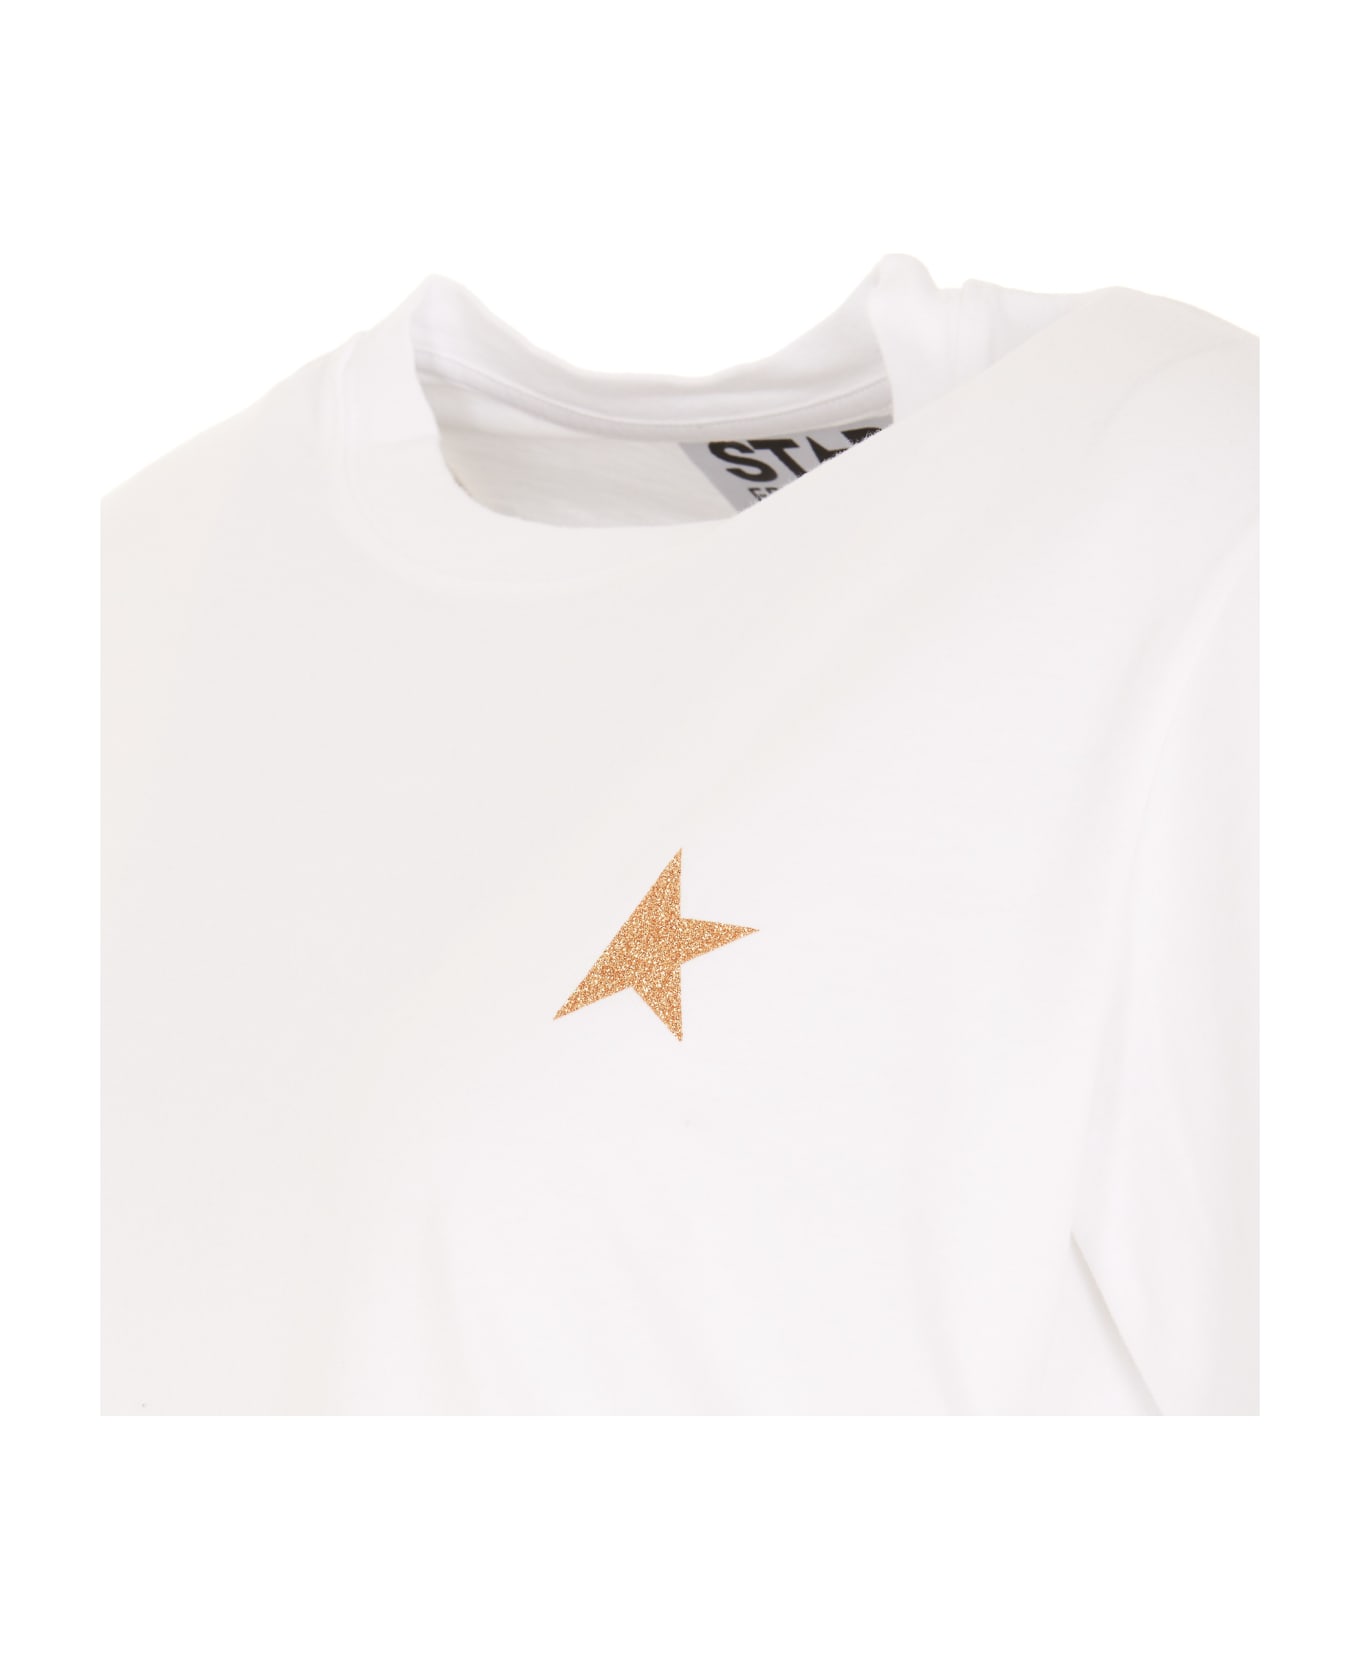 Golden Goose Star Logo T-shirt - White